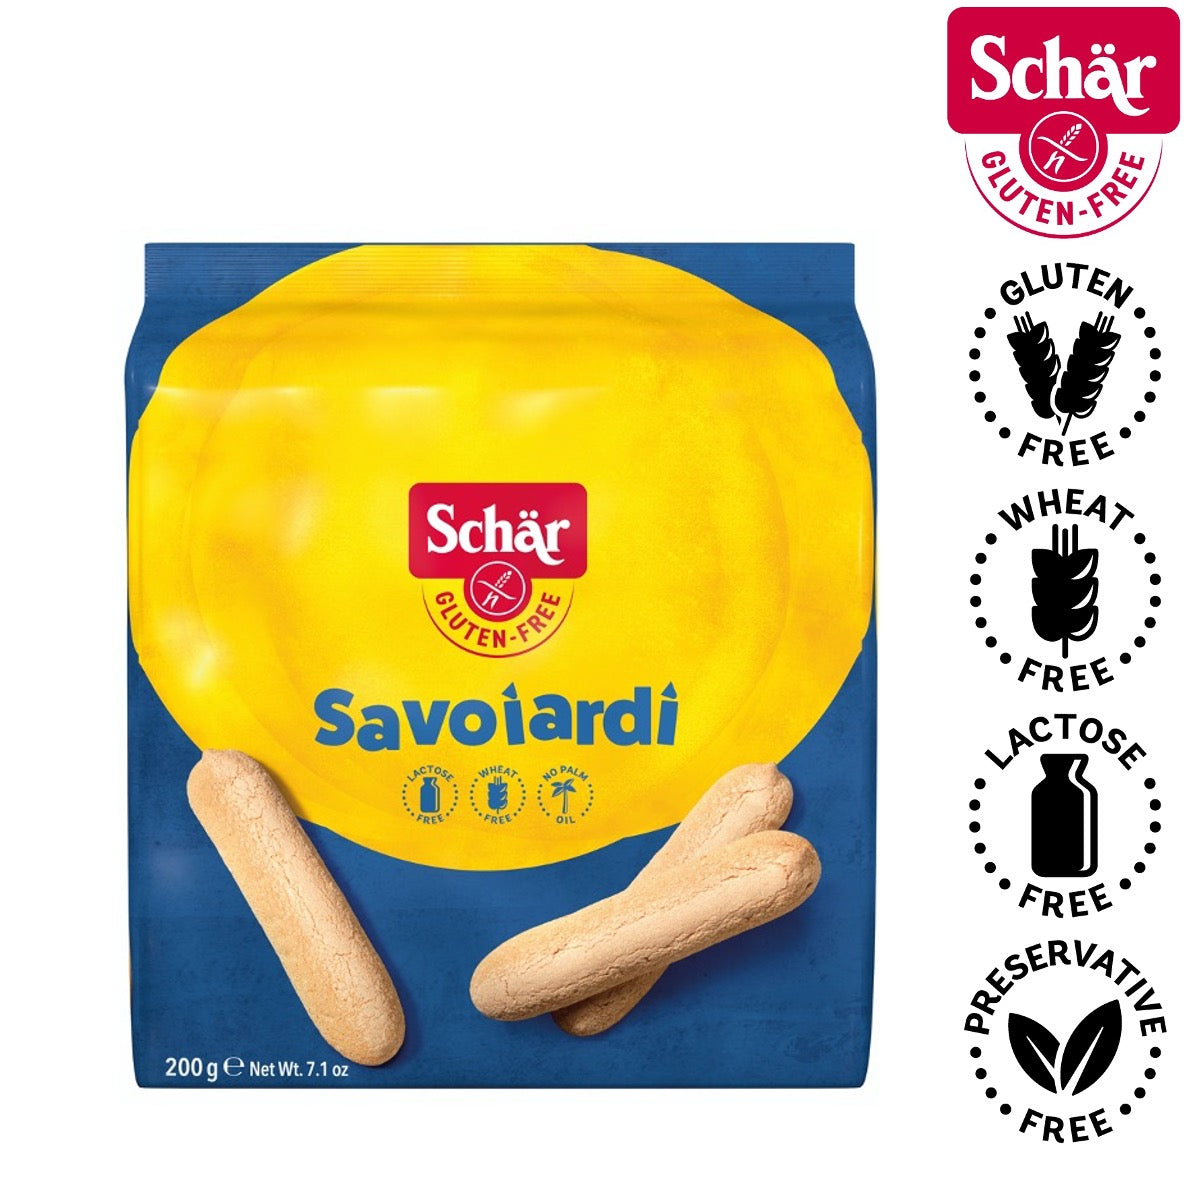 Schar Gluten Free Savoiardi, Biscuits for Tiramisu - 200gr